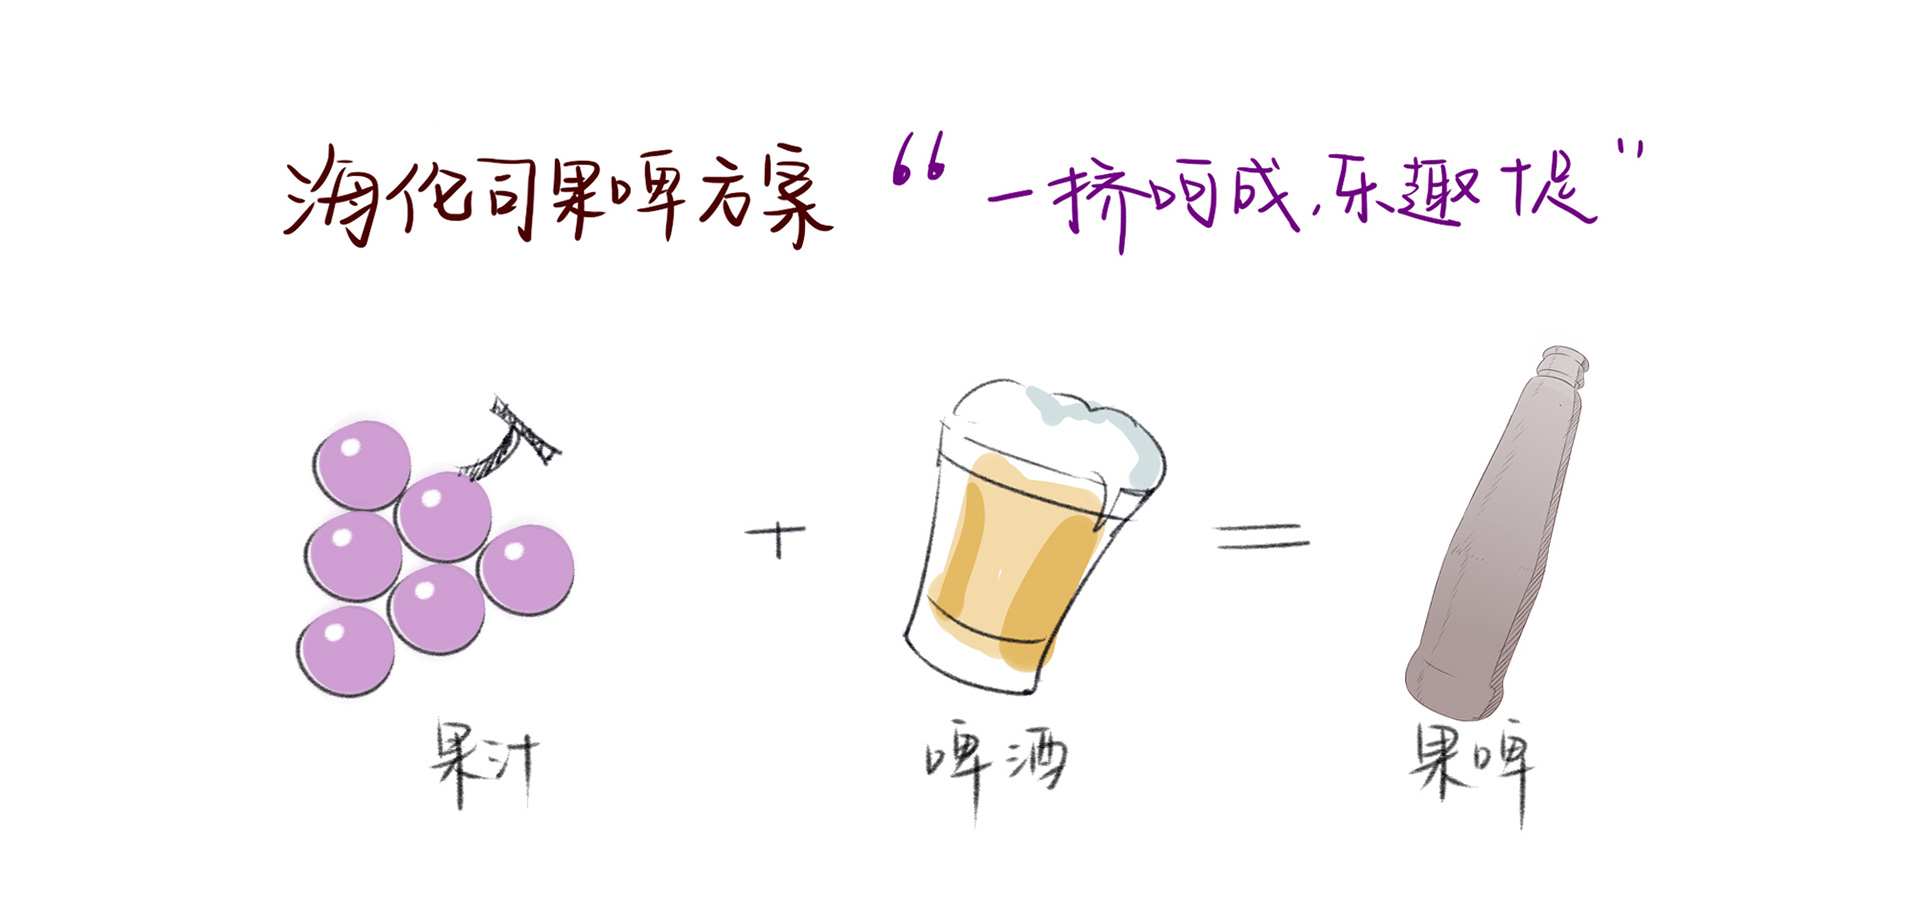 深圳啤酒包装设计公司,古一设计,酒标设计